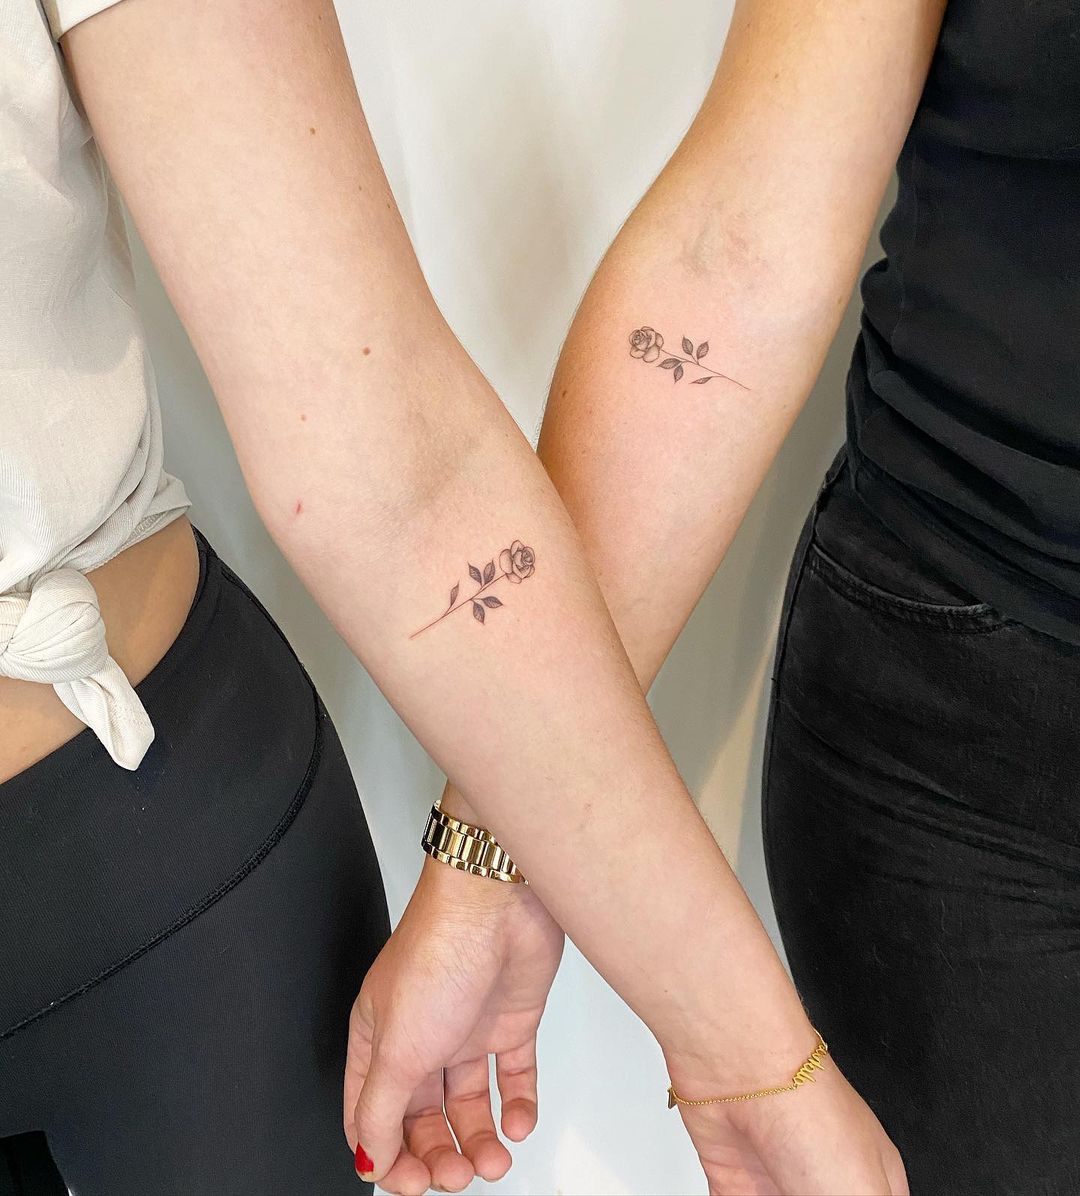 Bestfriend tattoos. #bestfriends #tattoos #small #smalltattols #cute #girly  #queen | Matching friend tattoos, Friend tattoos small, Matching best  friend tattoos